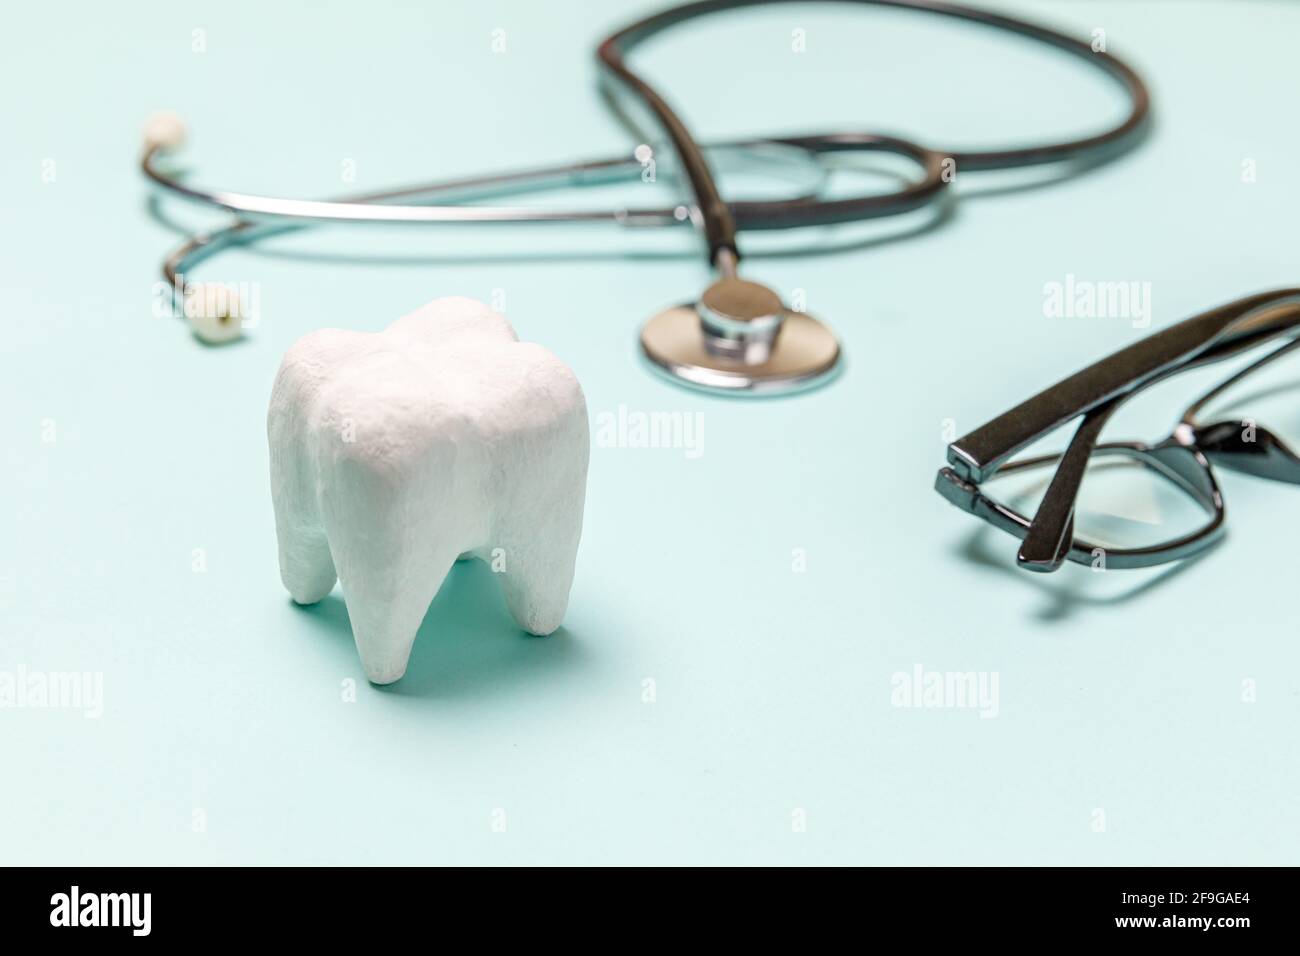 Gesundheit Zahnpflege Konzept. Medizingeräte Stethoskop weiß gesunde Zahngläser auf pastellblauem Hintergrund isoliert. Gerät für denti Stockfoto